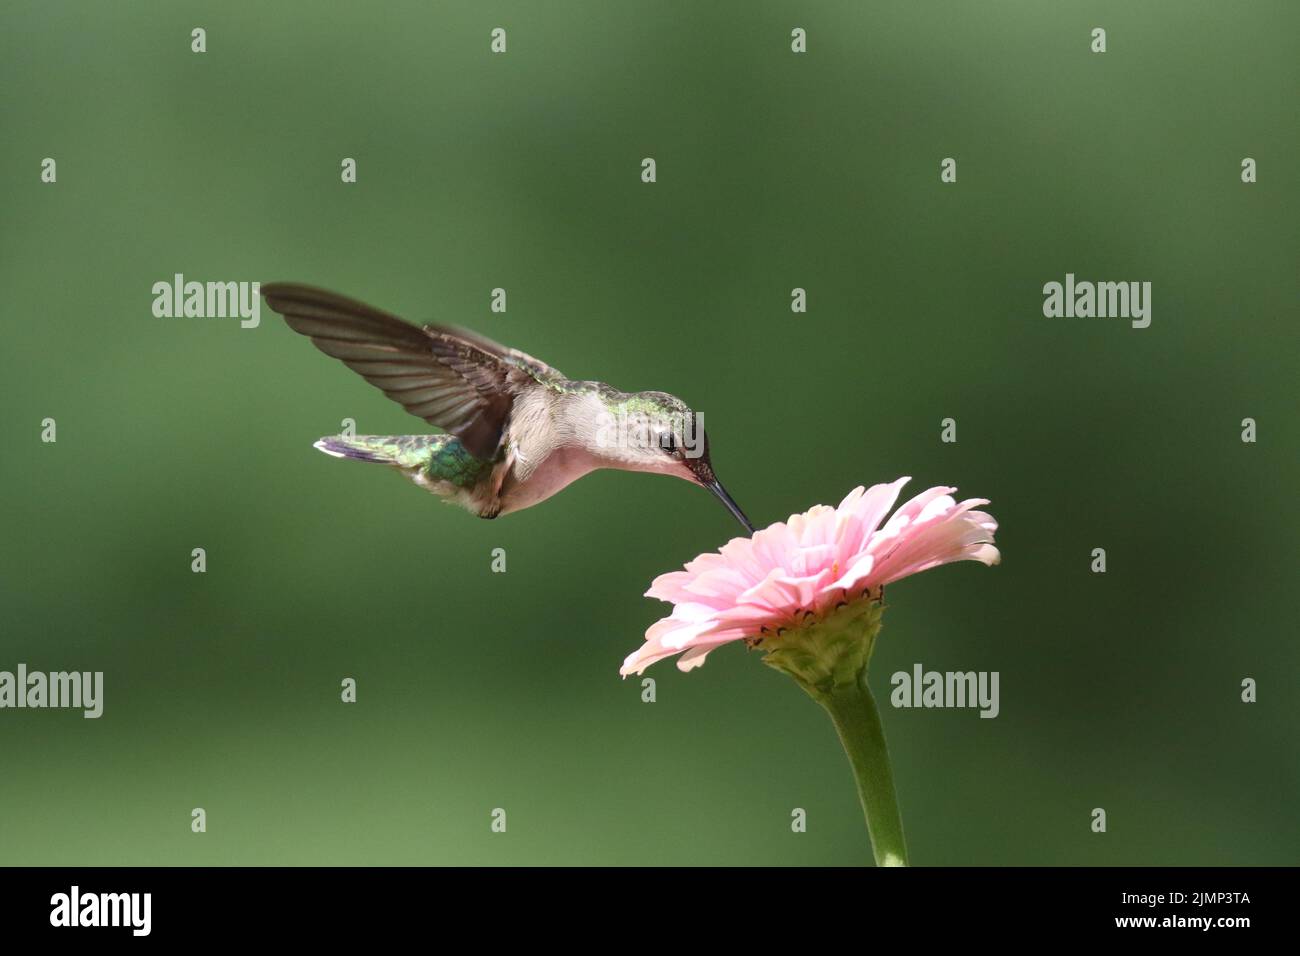 Femmina rubino gummingbird Archilochus colubris che si nutra su un fiore di zinnia Foto Stock